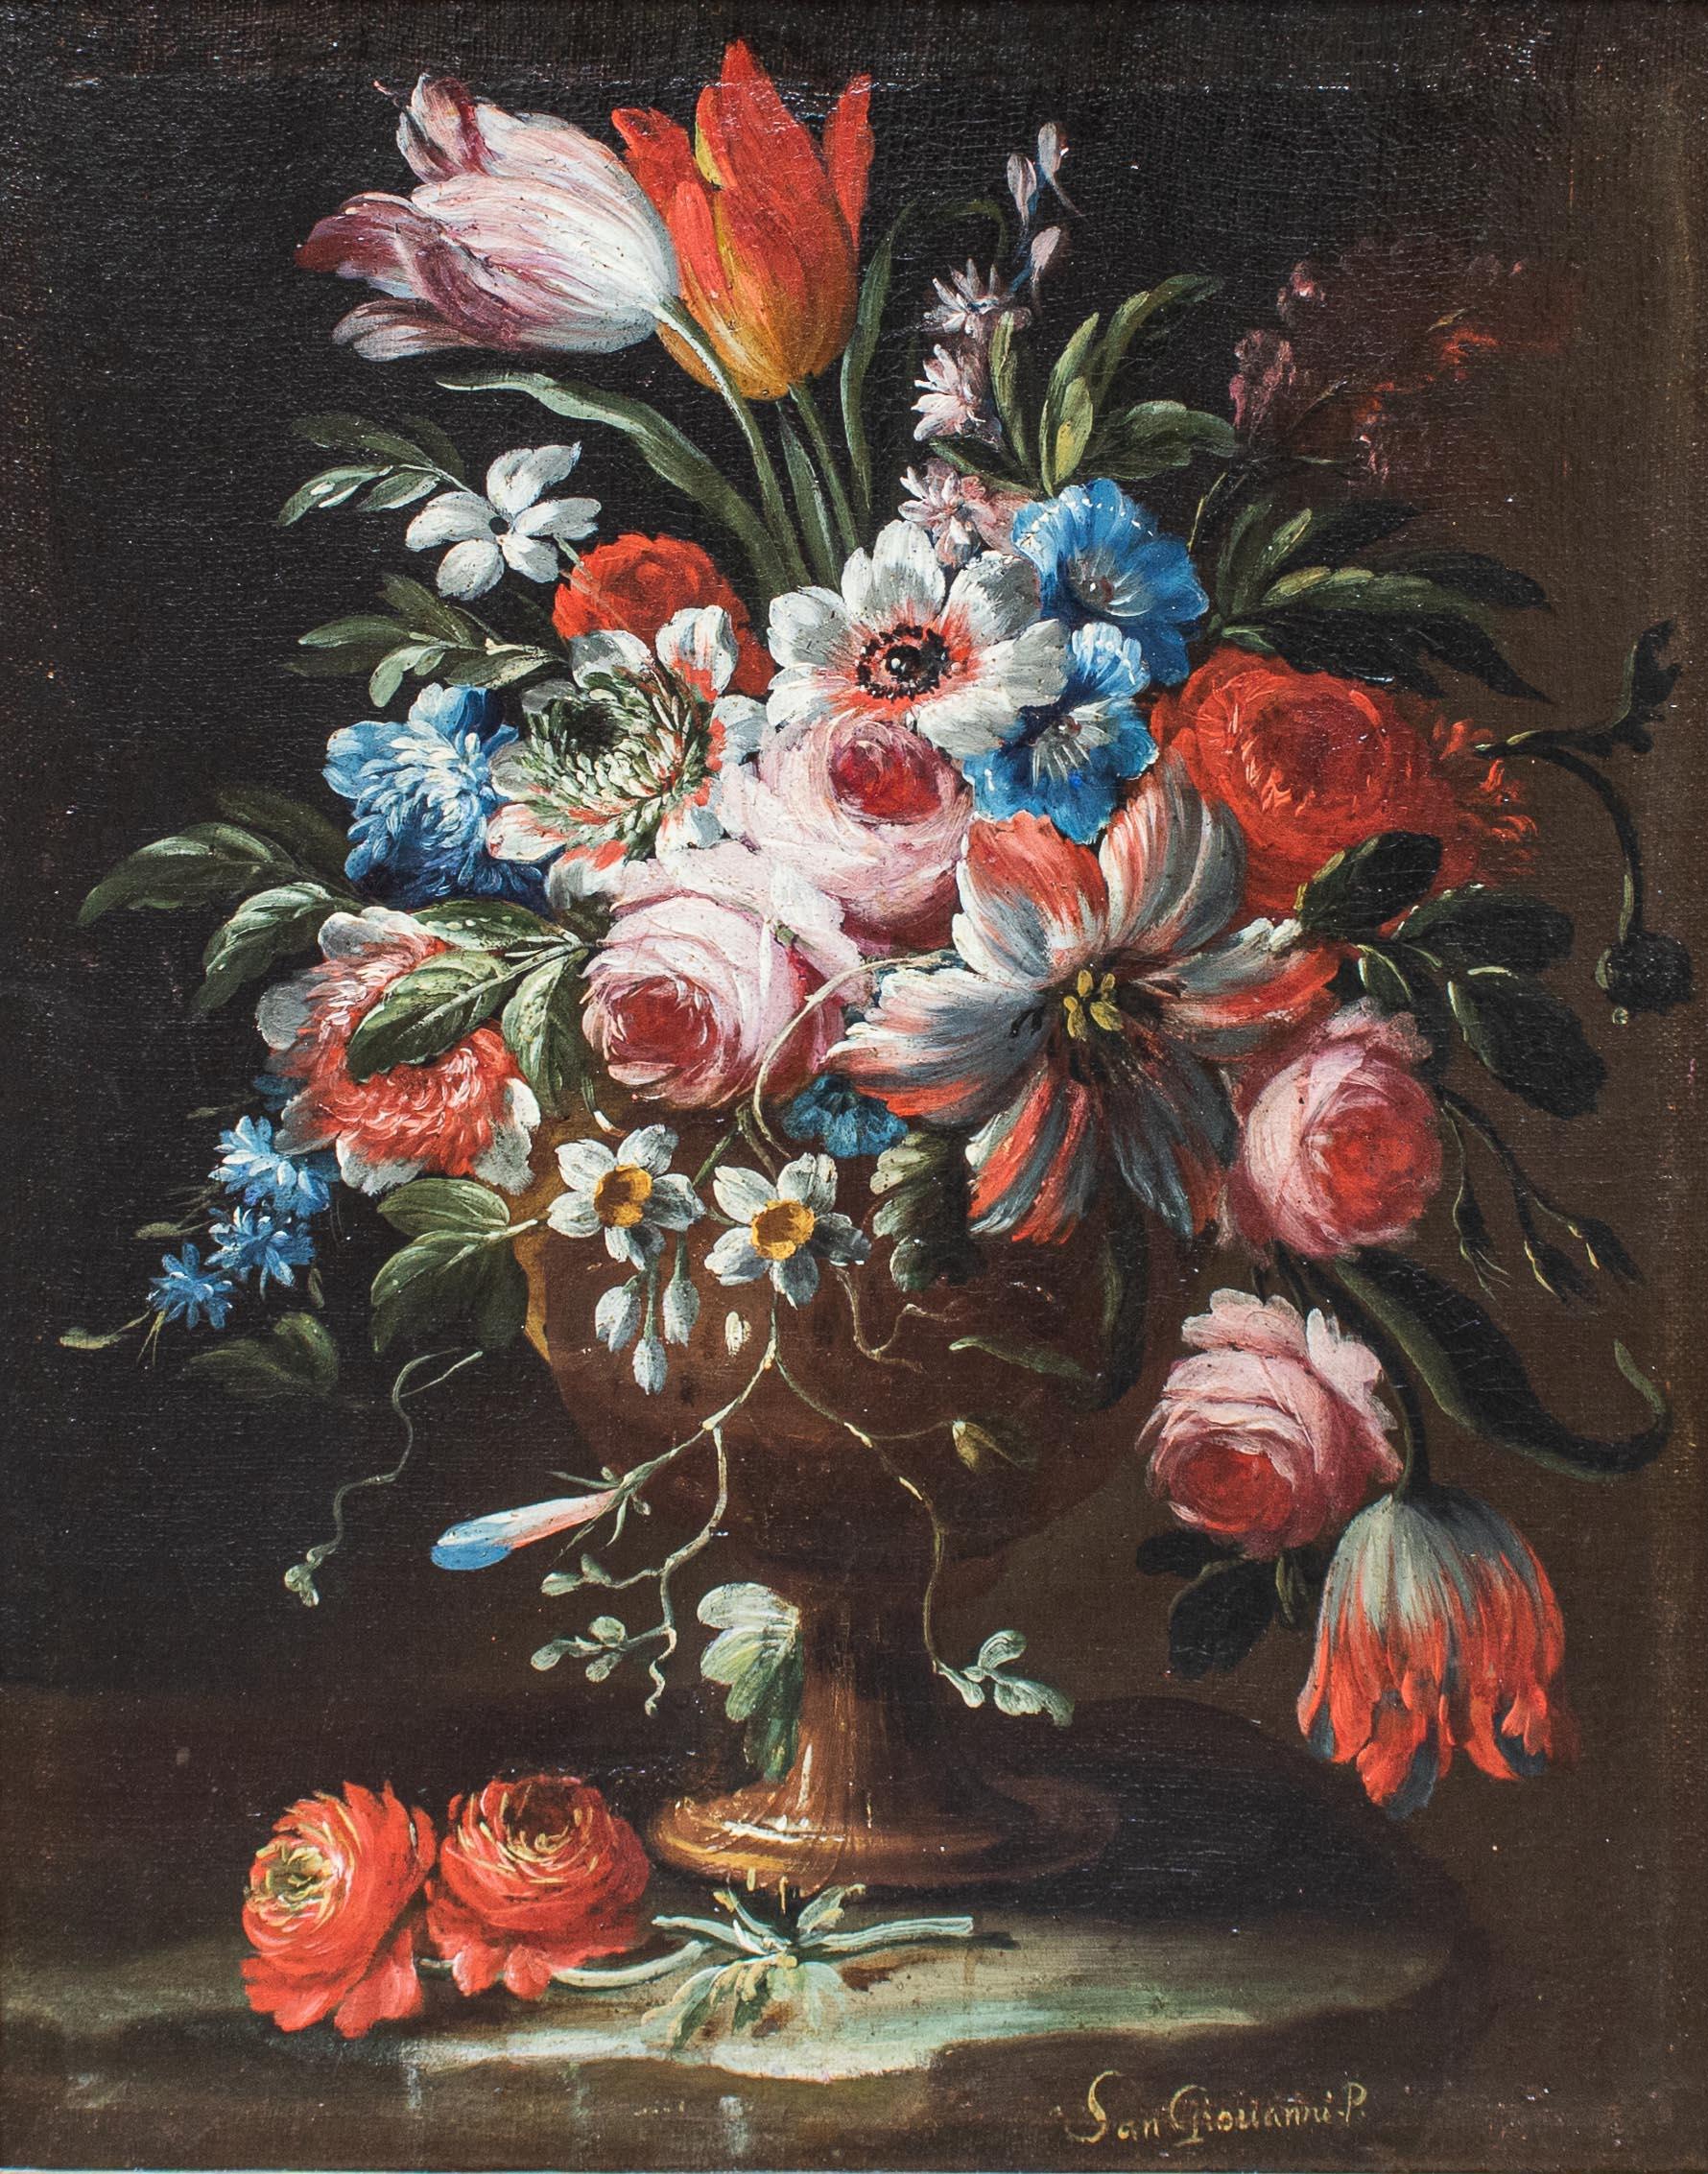 A. Sangiovanni (actif entre le 17e et le 18e siècle)
Nature morte avec vase de fleurs
Huile sur toile, 61 x 49 cm - avec cadre 78 x 65 cm
Signé 